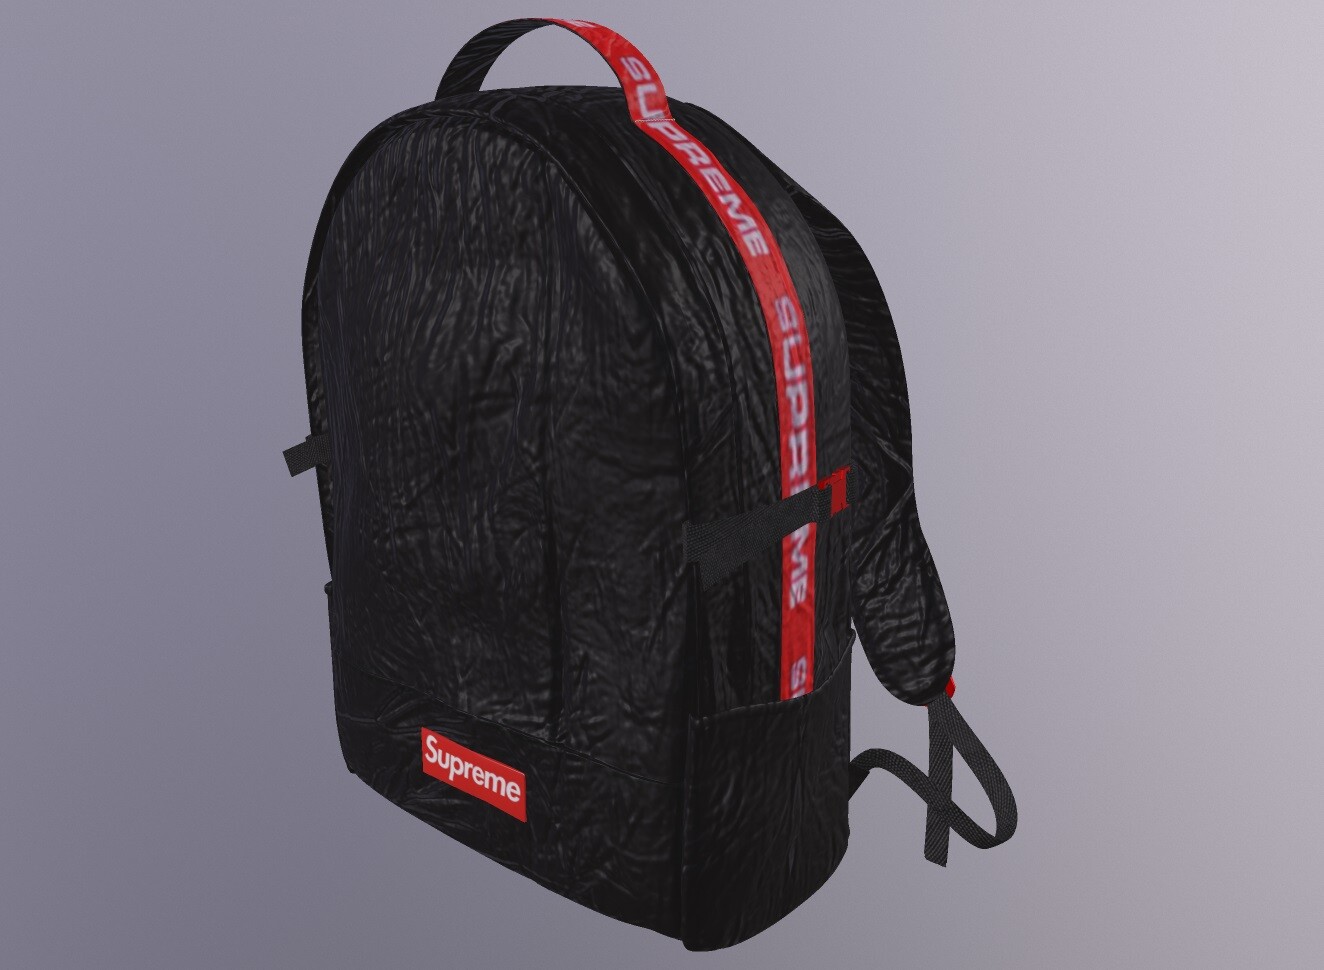 ArtStation - Supreme X LV Backpack